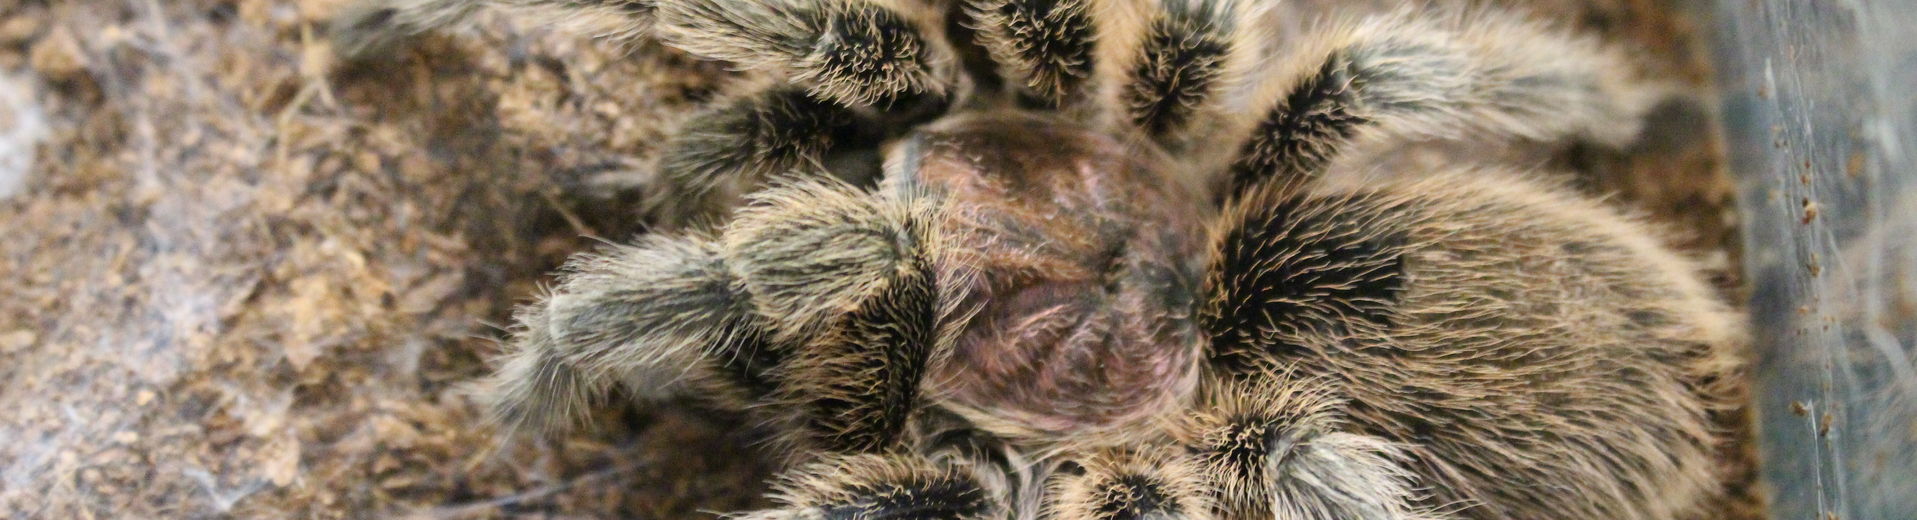 A large tarantula